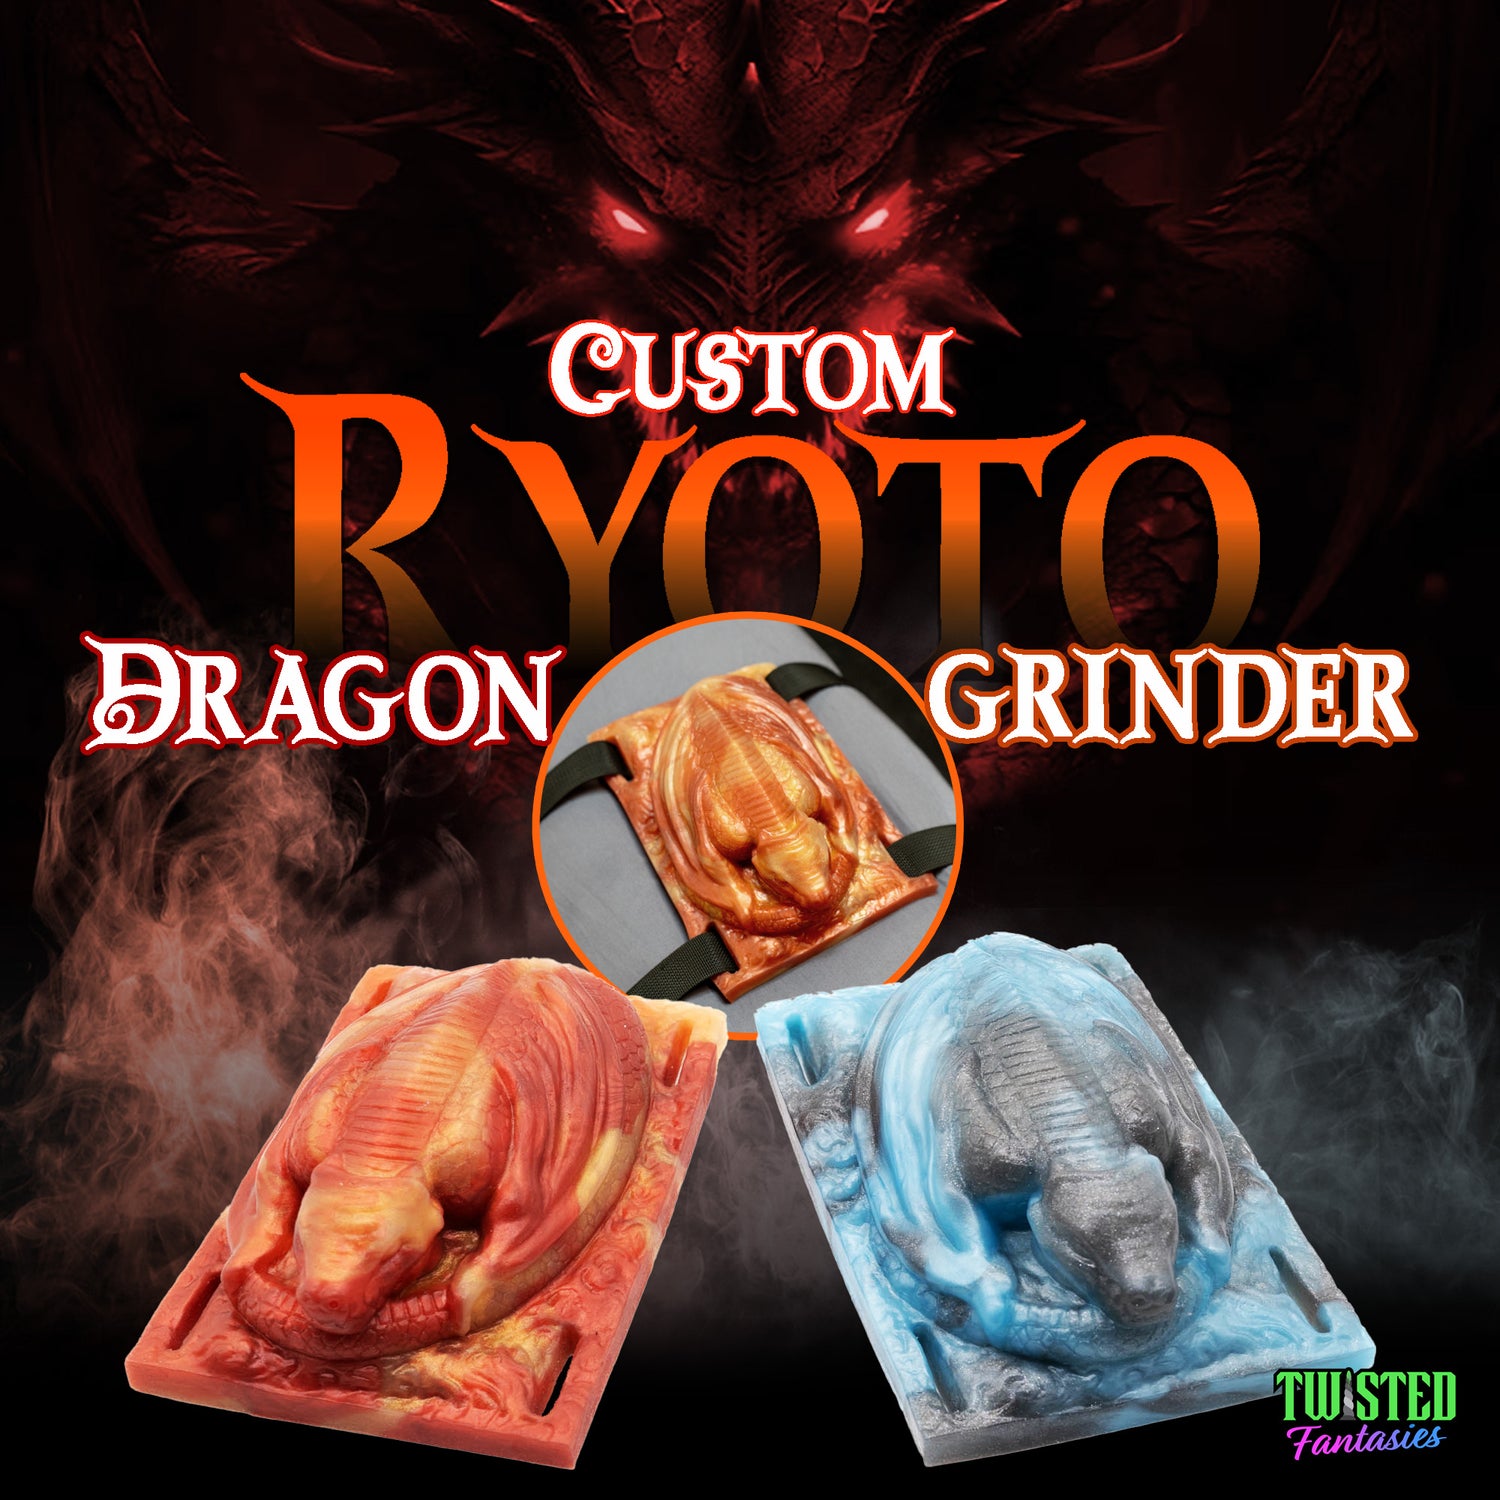 Ryoto Dragon Grinders